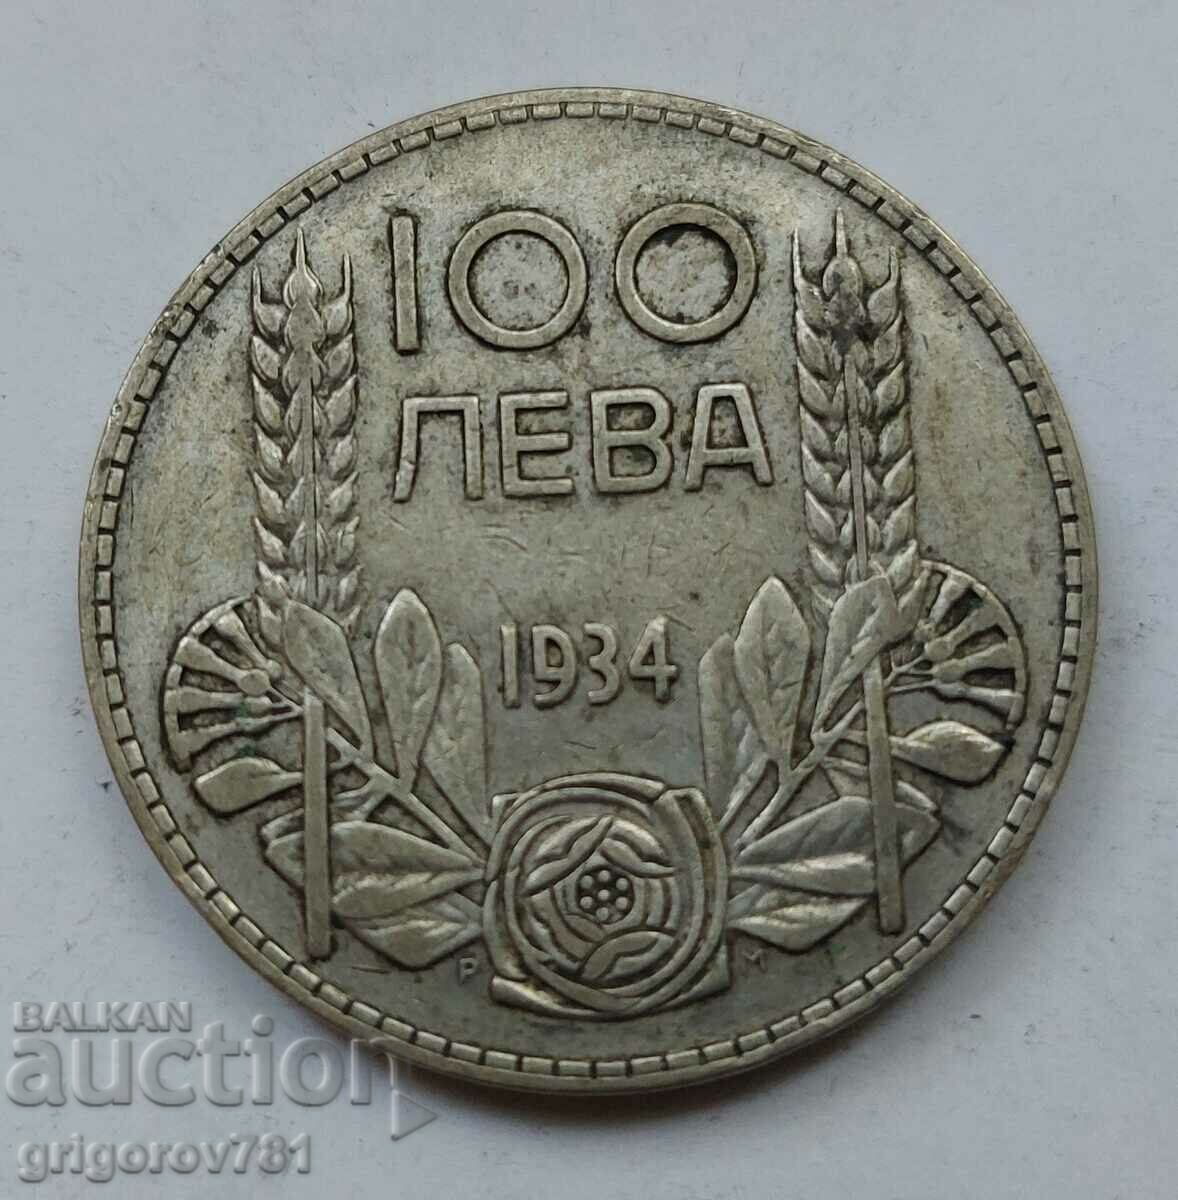 Ασήμι 100 λέβα Βουλγαρία 1934 - ασημένιο νόμισμα #65